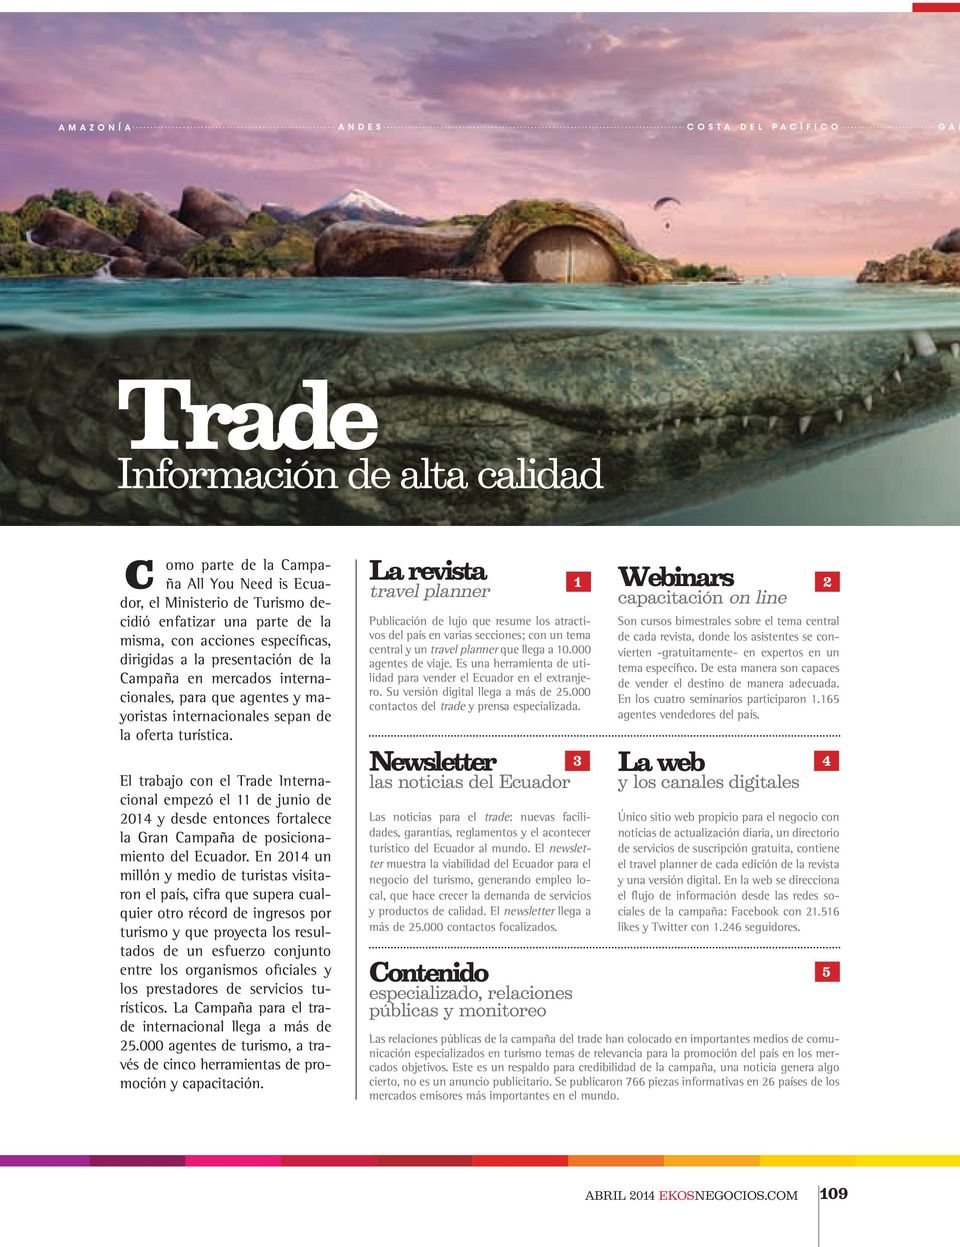 El trabajo con el Trade Internacional empezó el 11 de junio de 2014 y desde entonces fortalece la Gran Campaña de posicionamiento del Ecuador.